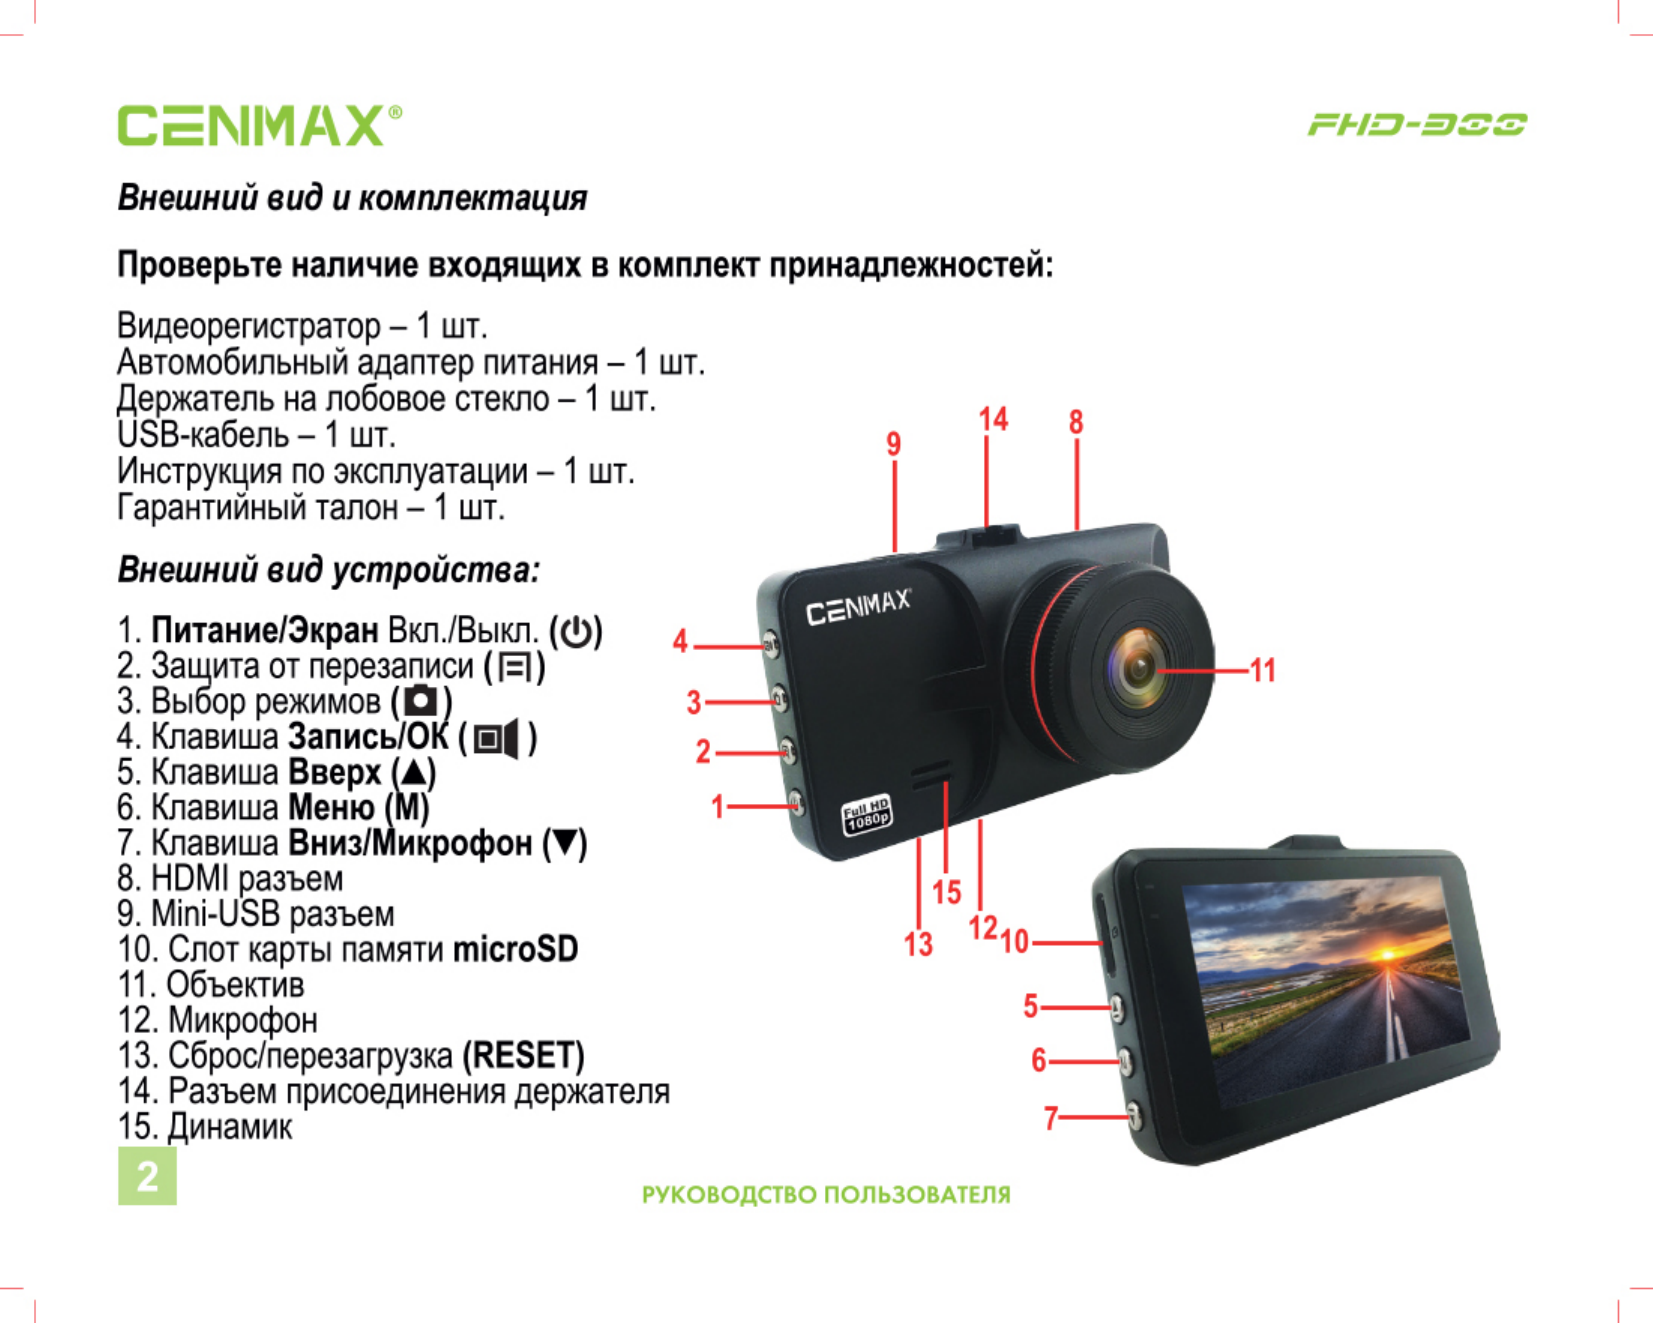 Cenmax FHD-550